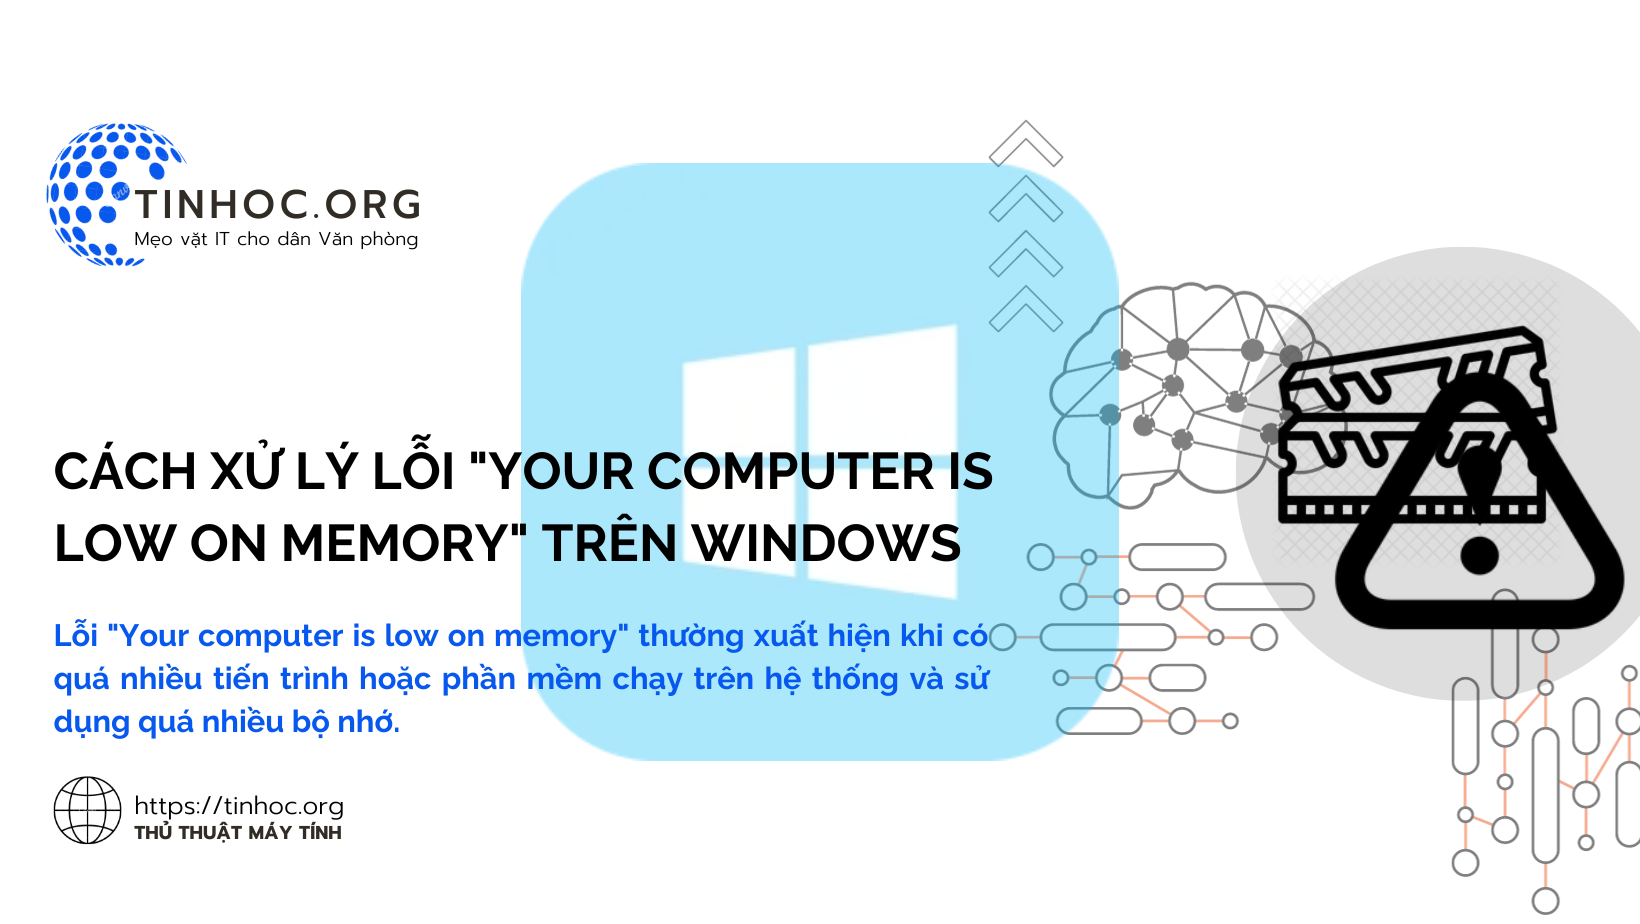 Lỗi "Your computer is low on memory" thường xuất hiện khi có quá nhiều tiến trình hoặc phần mềm chạy trên hệ thống và sử dụng quá nhiều bộ nhớ.